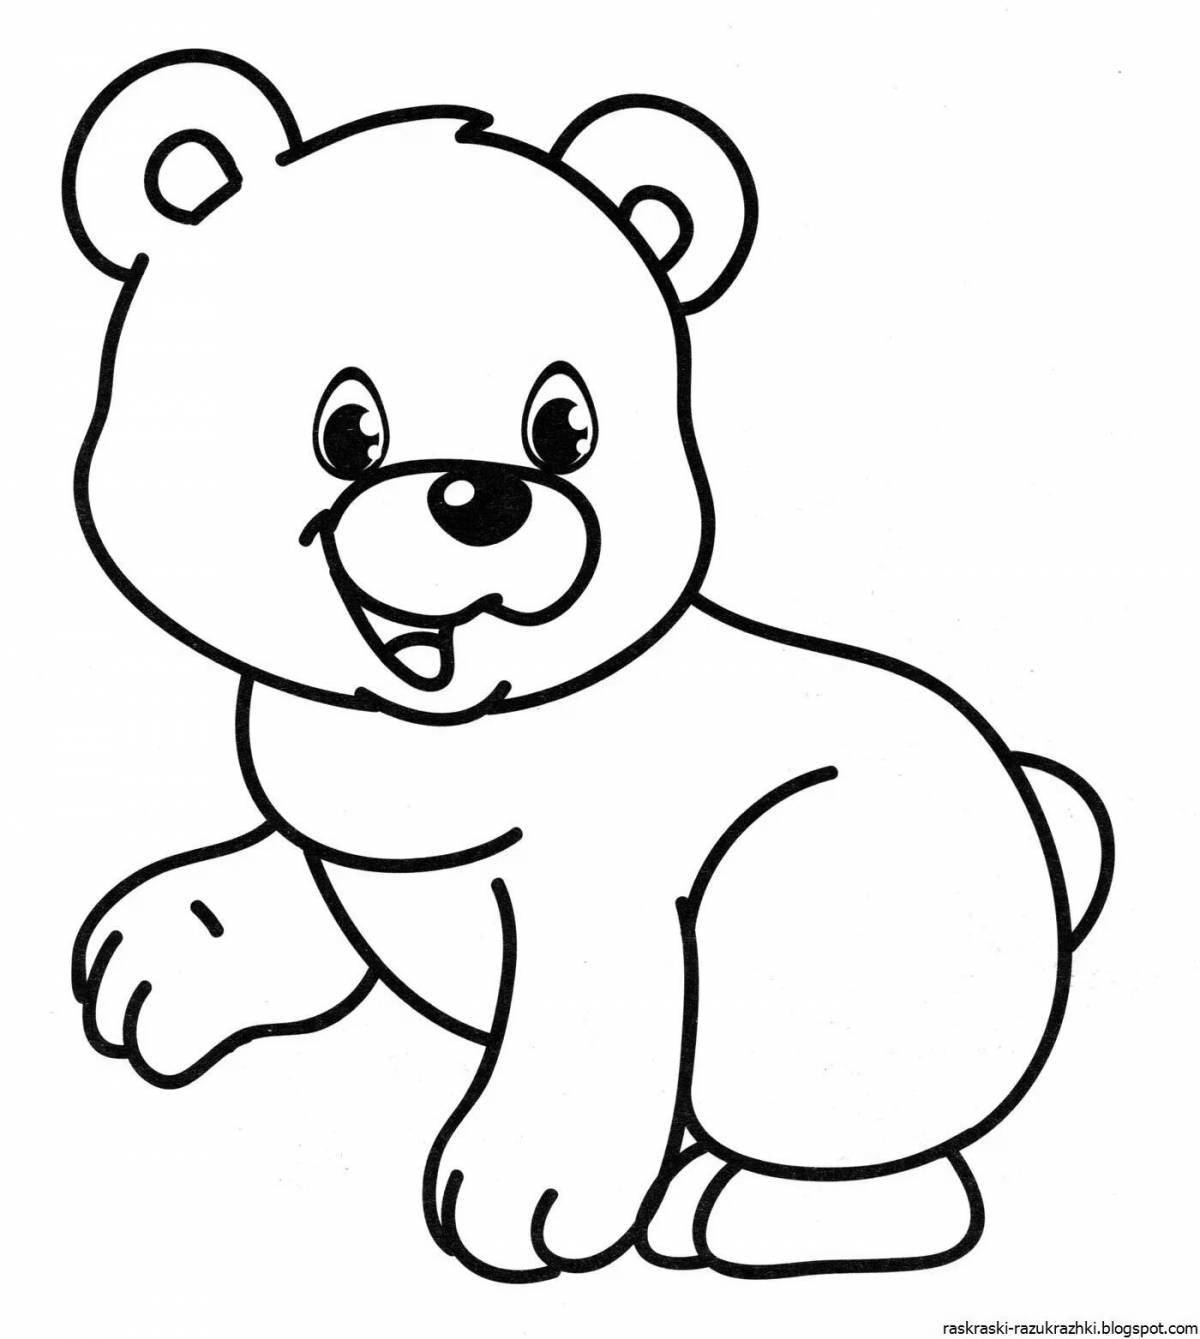 Увлекательная раскраска медведя для детей 4-5 лет